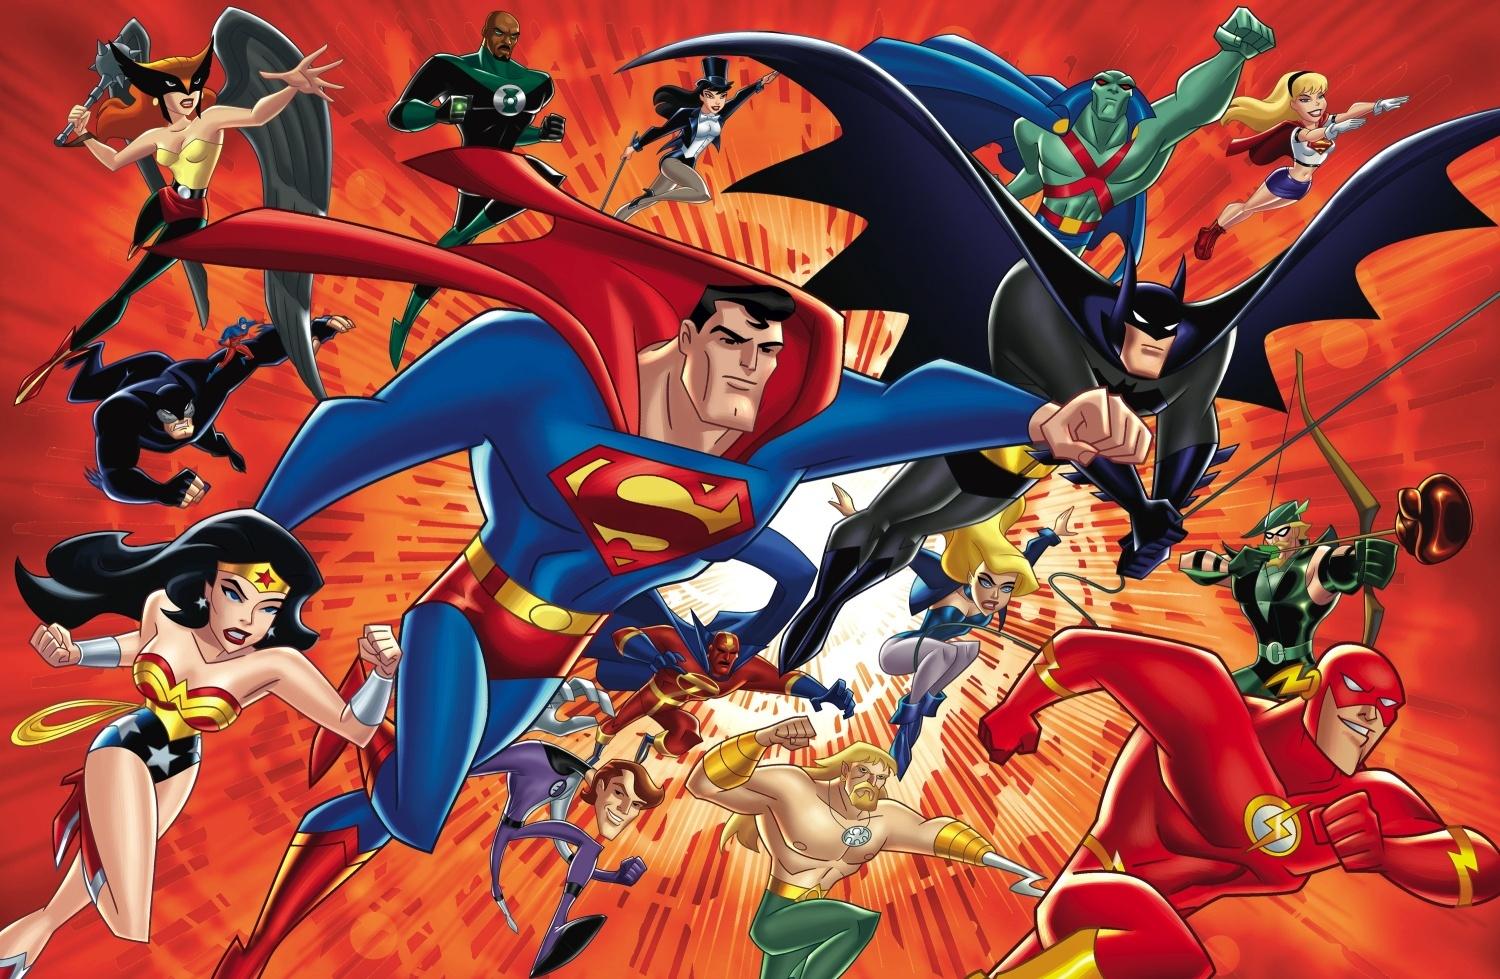 Justice League: Unlimited wallpaper, Comics, HQ Justice